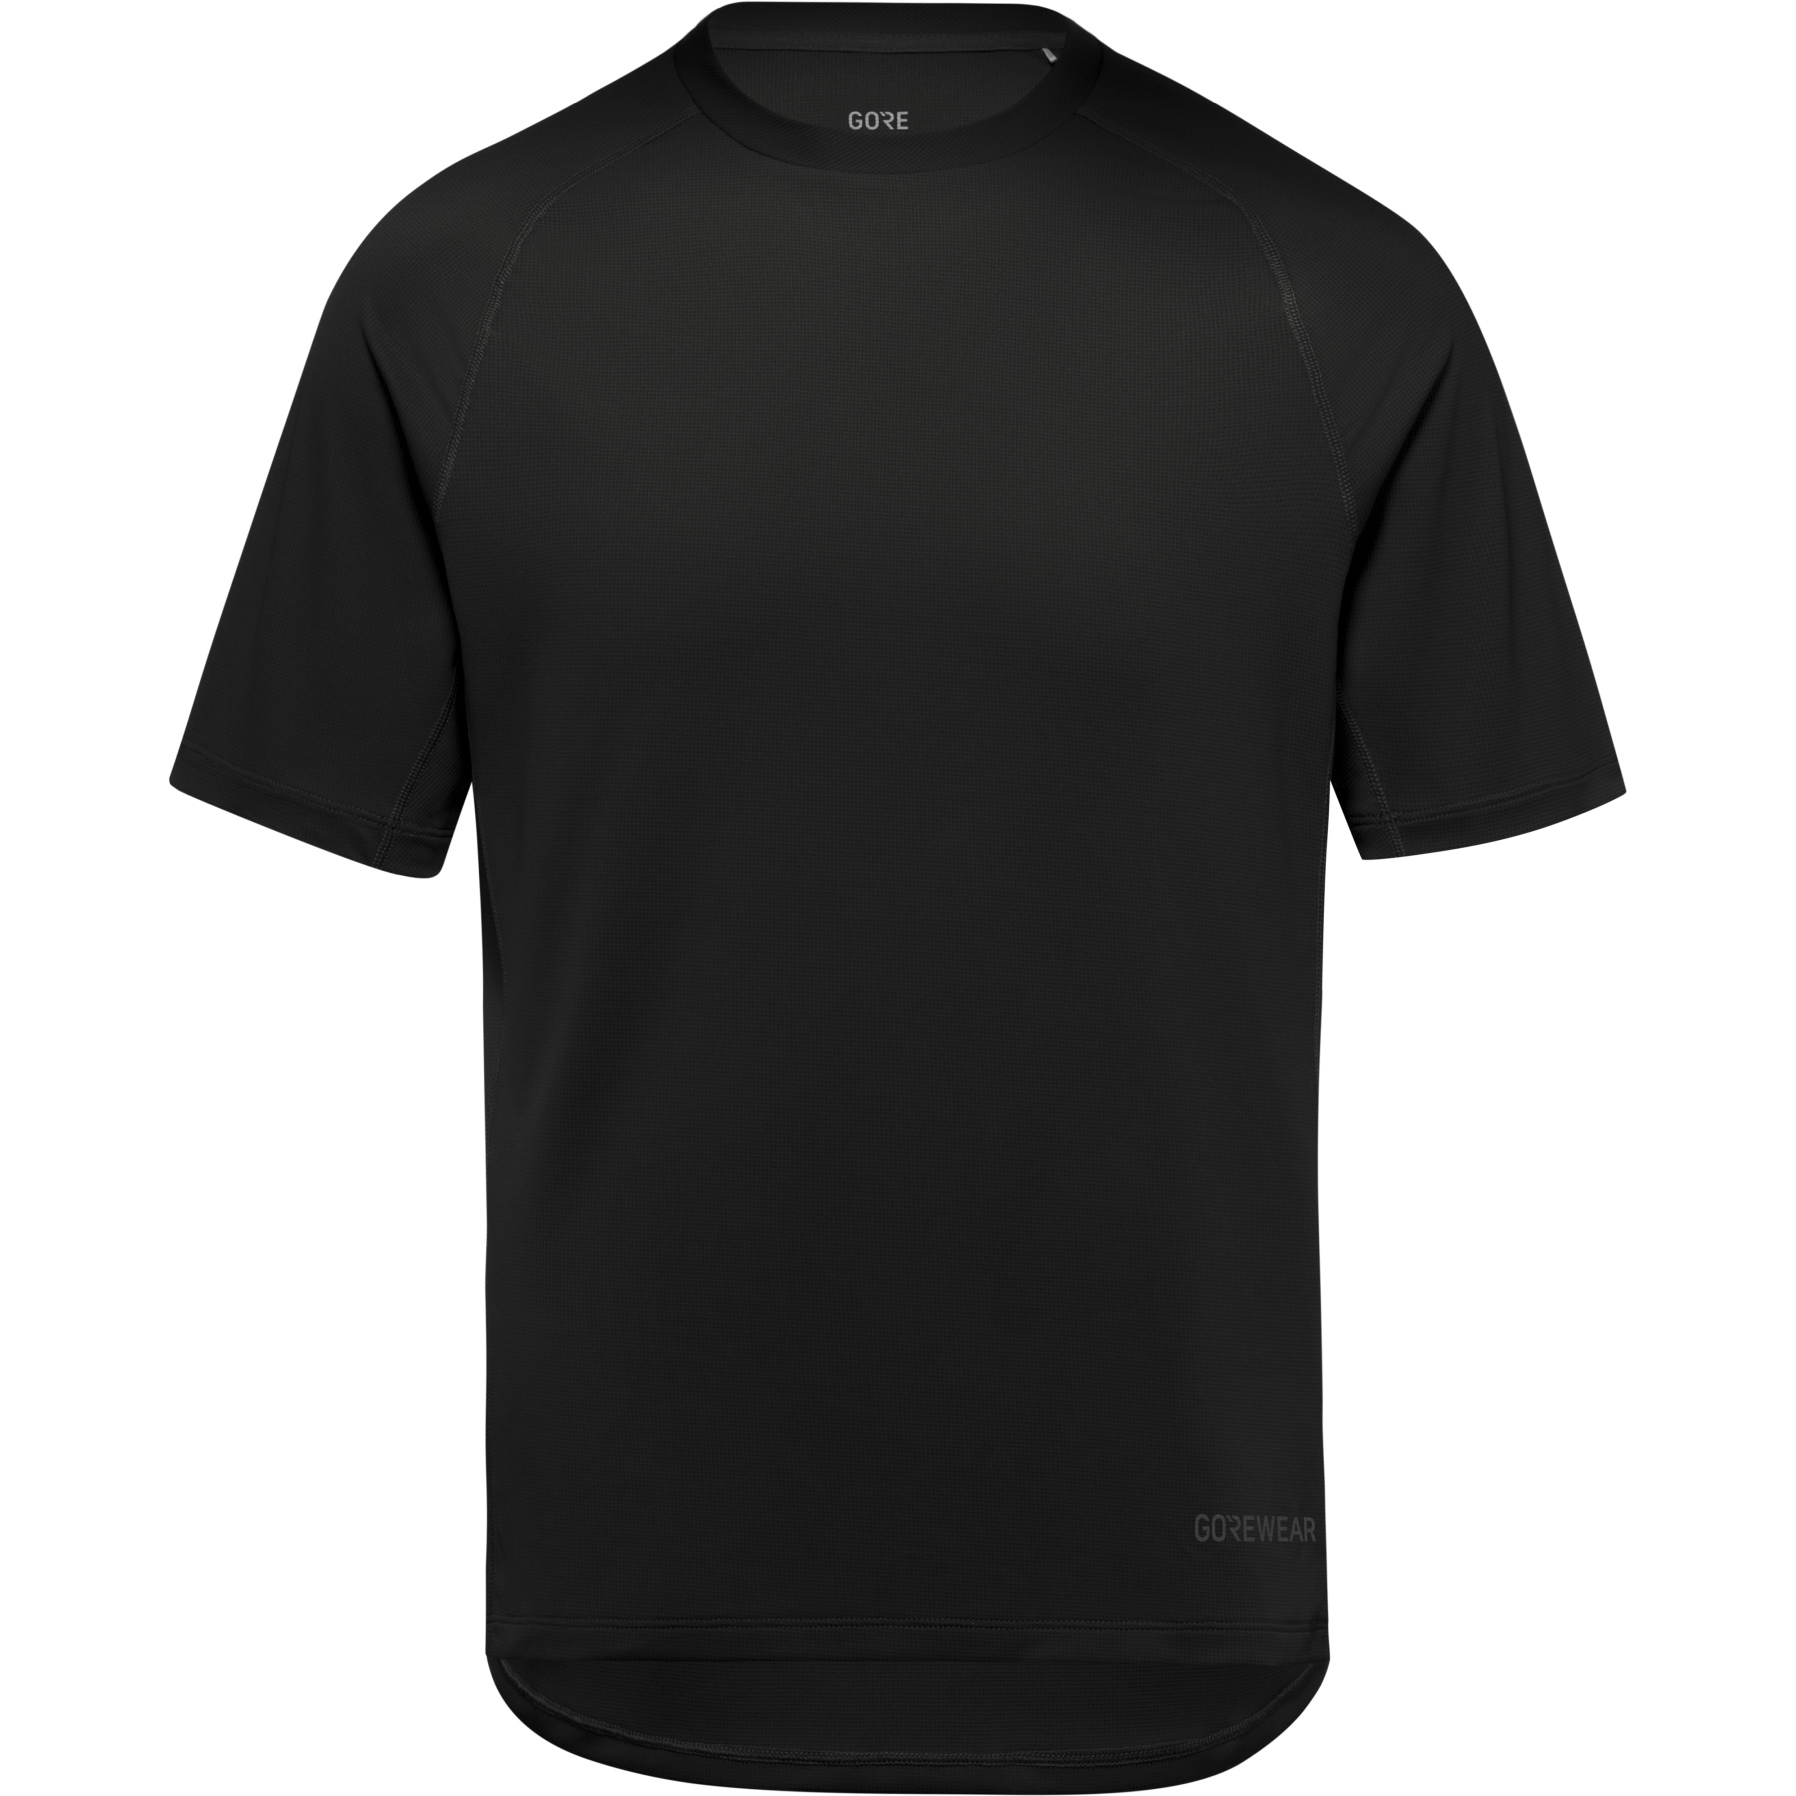 Imagen de GOREWEAR Camiseta Hombre - Everyday - negro 9900